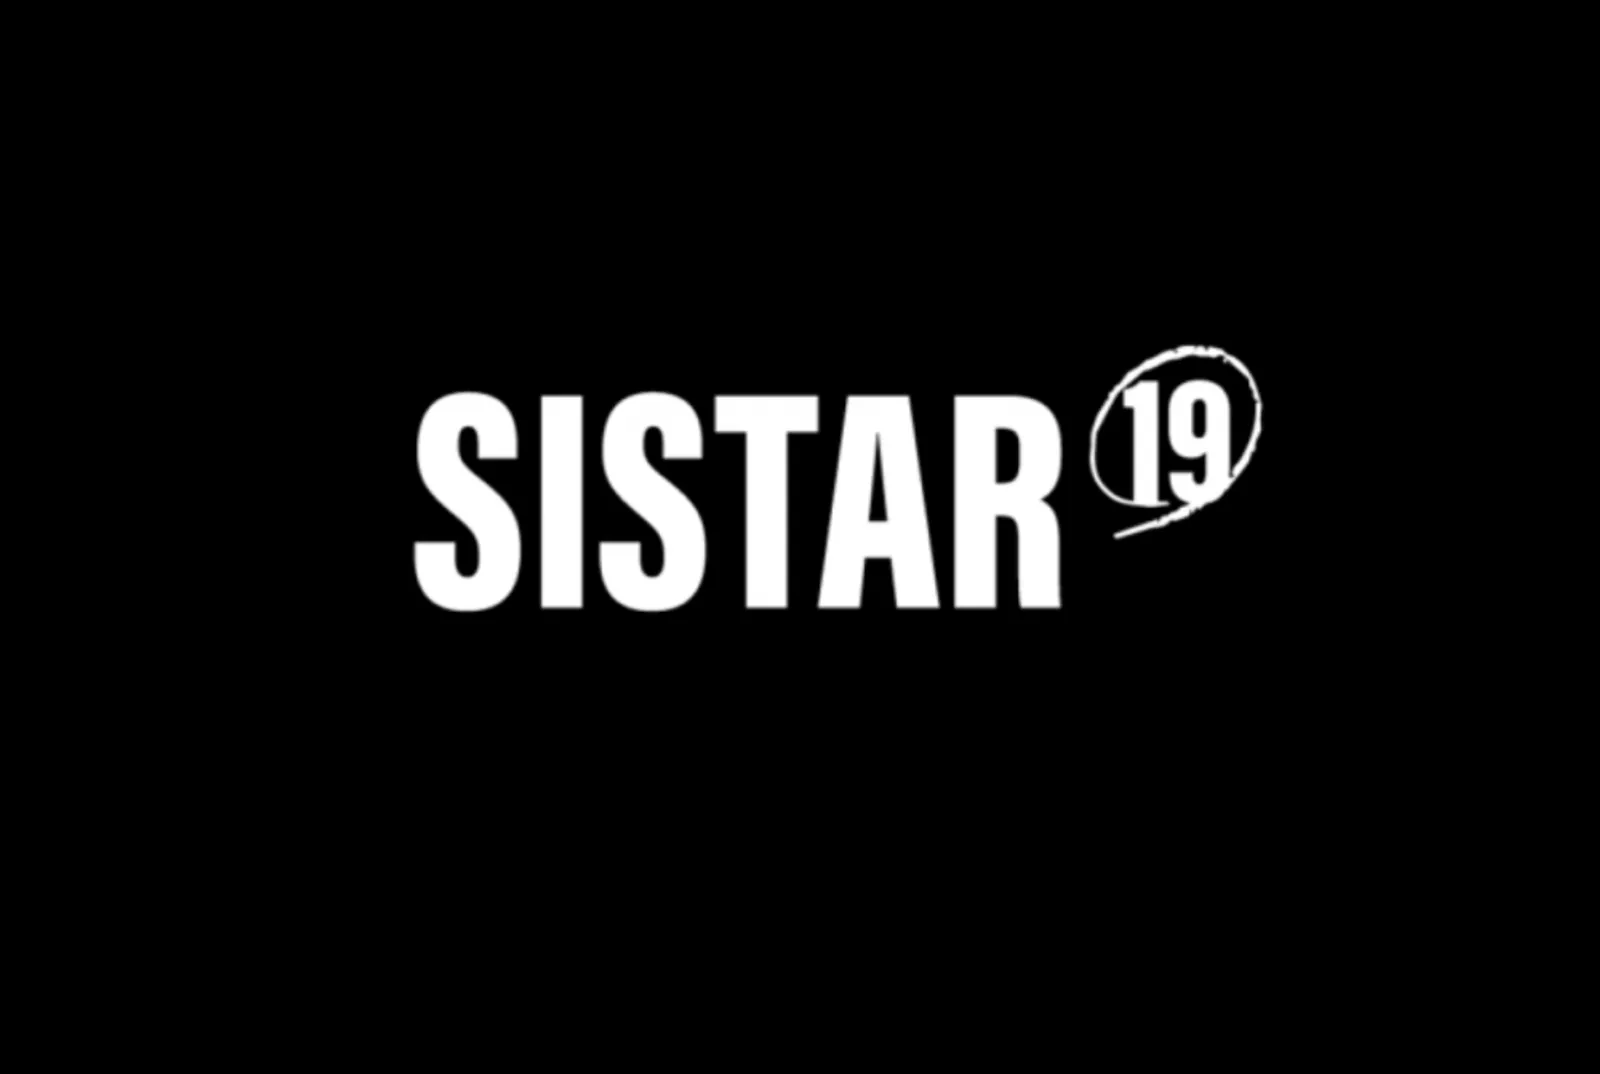 Bersiap Comeback! SISTAR19 Membagikan Teaser Perdana Lagu "No More"